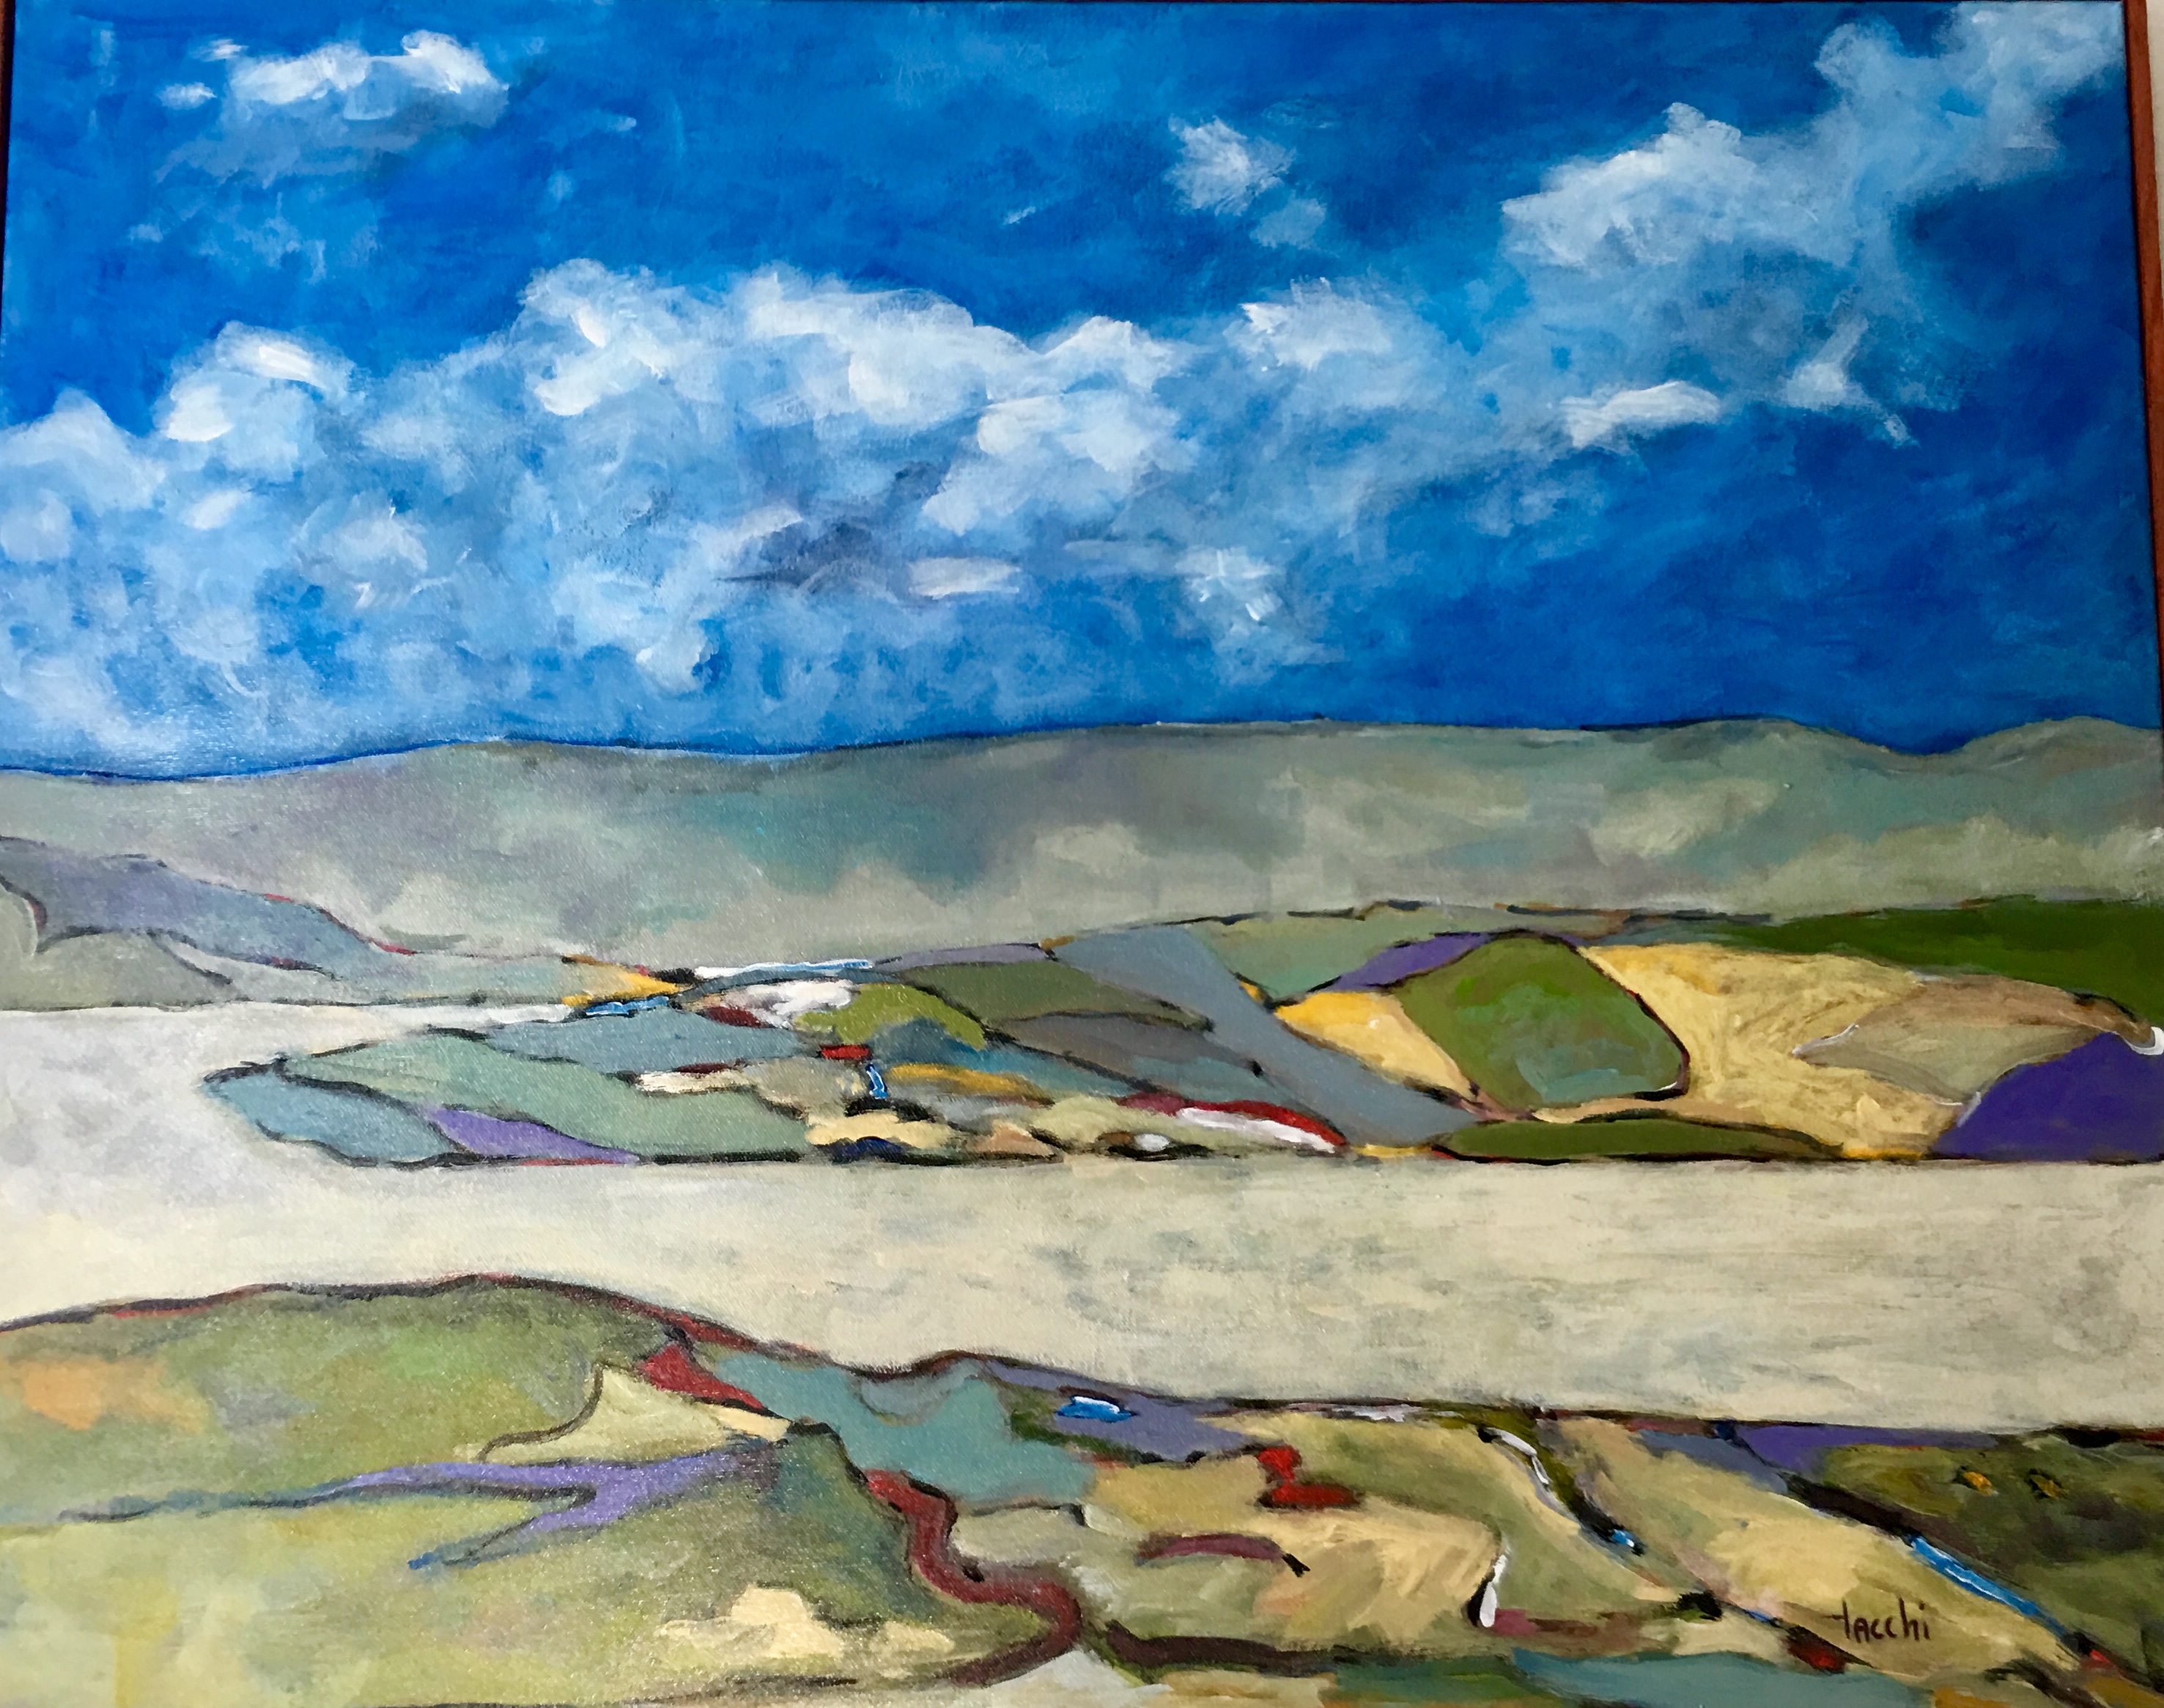 Une peinture de paysage de Morin-Heights présentant un ciel bleu serein et des nuages duveteux.